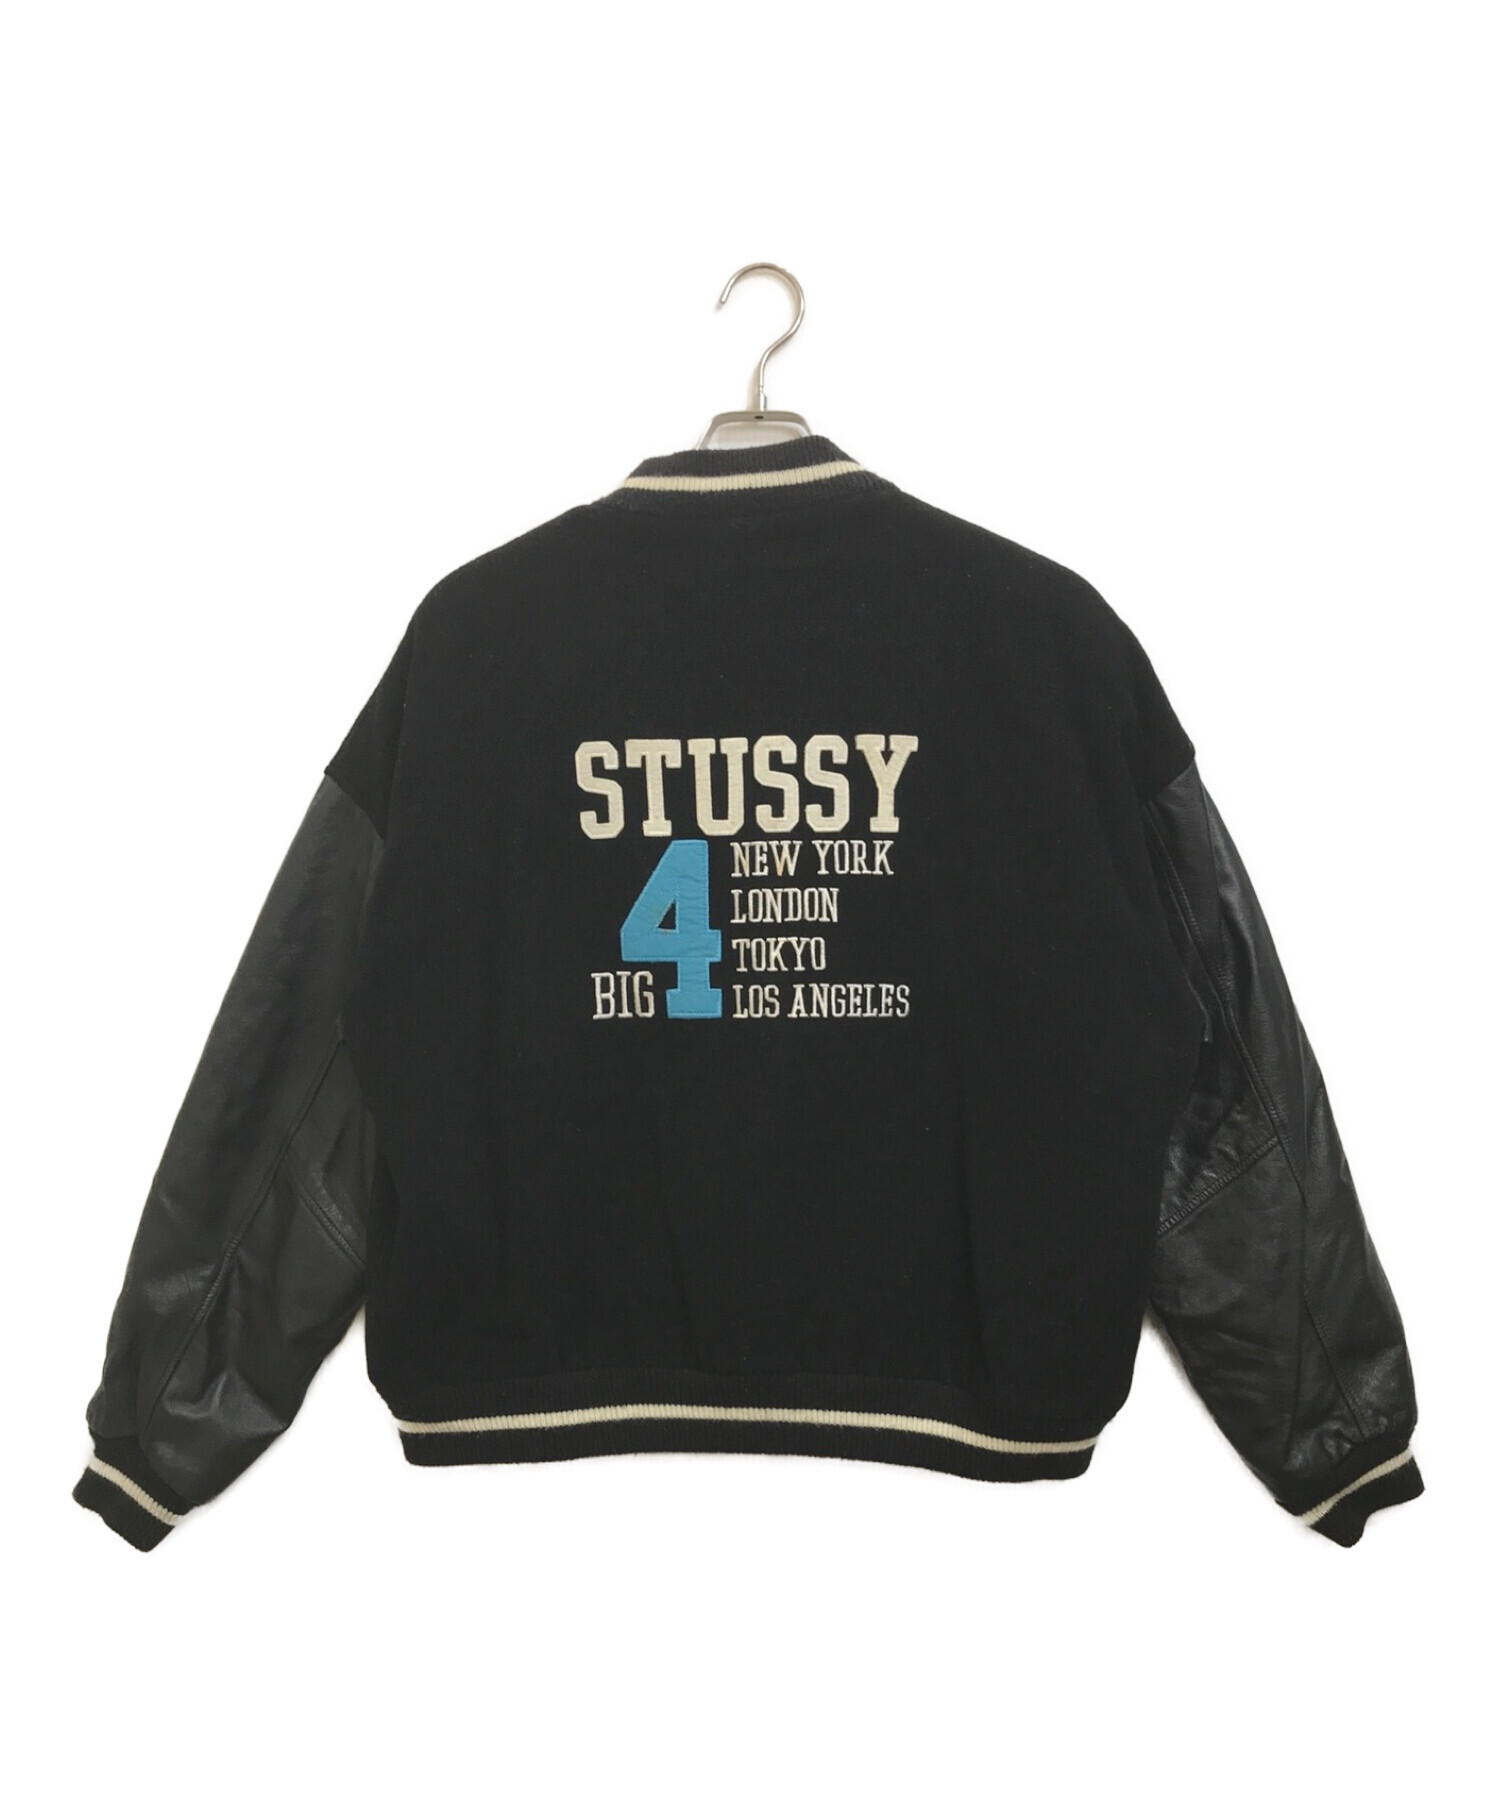 中古・古着通販】stussy (ステューシー) 90'sBIG4袖レザースタジャン